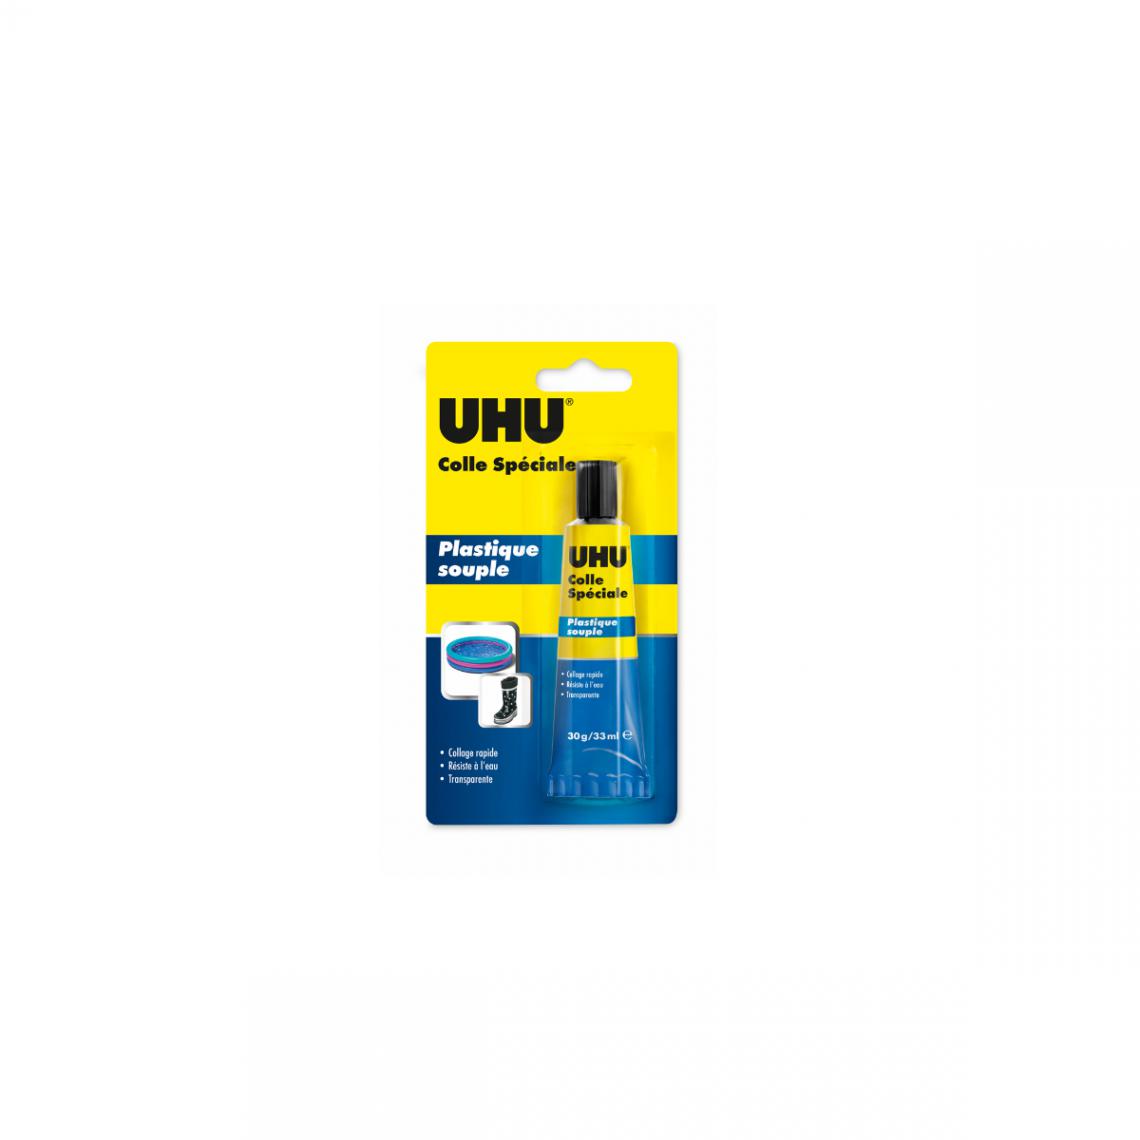 Uhu - Colle UHU spéciale plastique souple - 30g - 34175 - Colle & adhésif